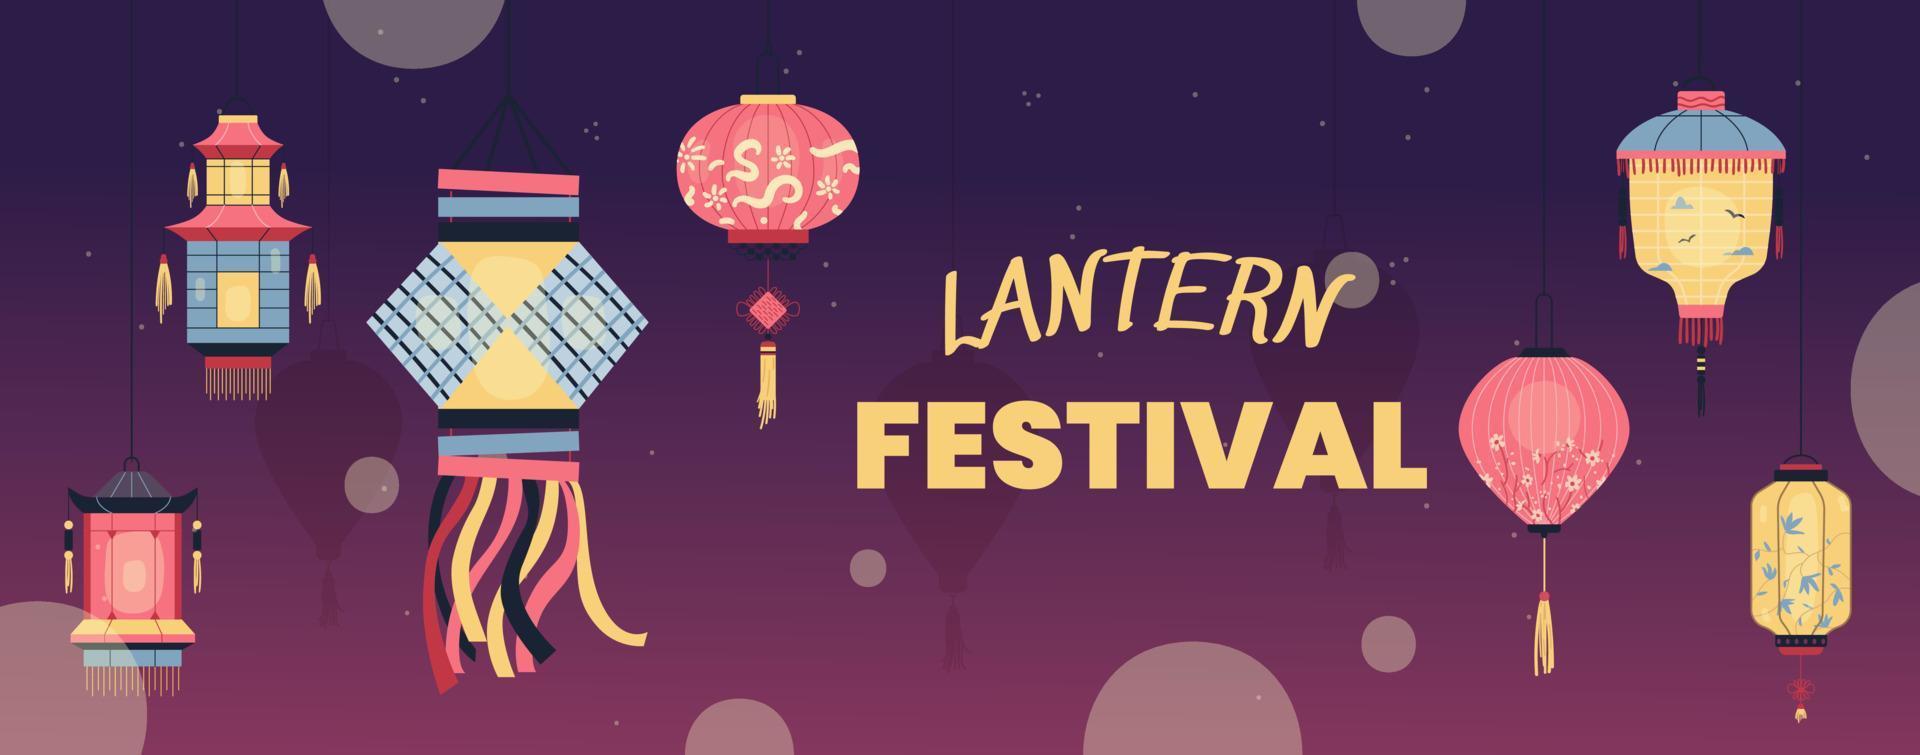 lanterne Festival invitation avec vecteur des illustrations de traditionnel chinois papier lanternes.